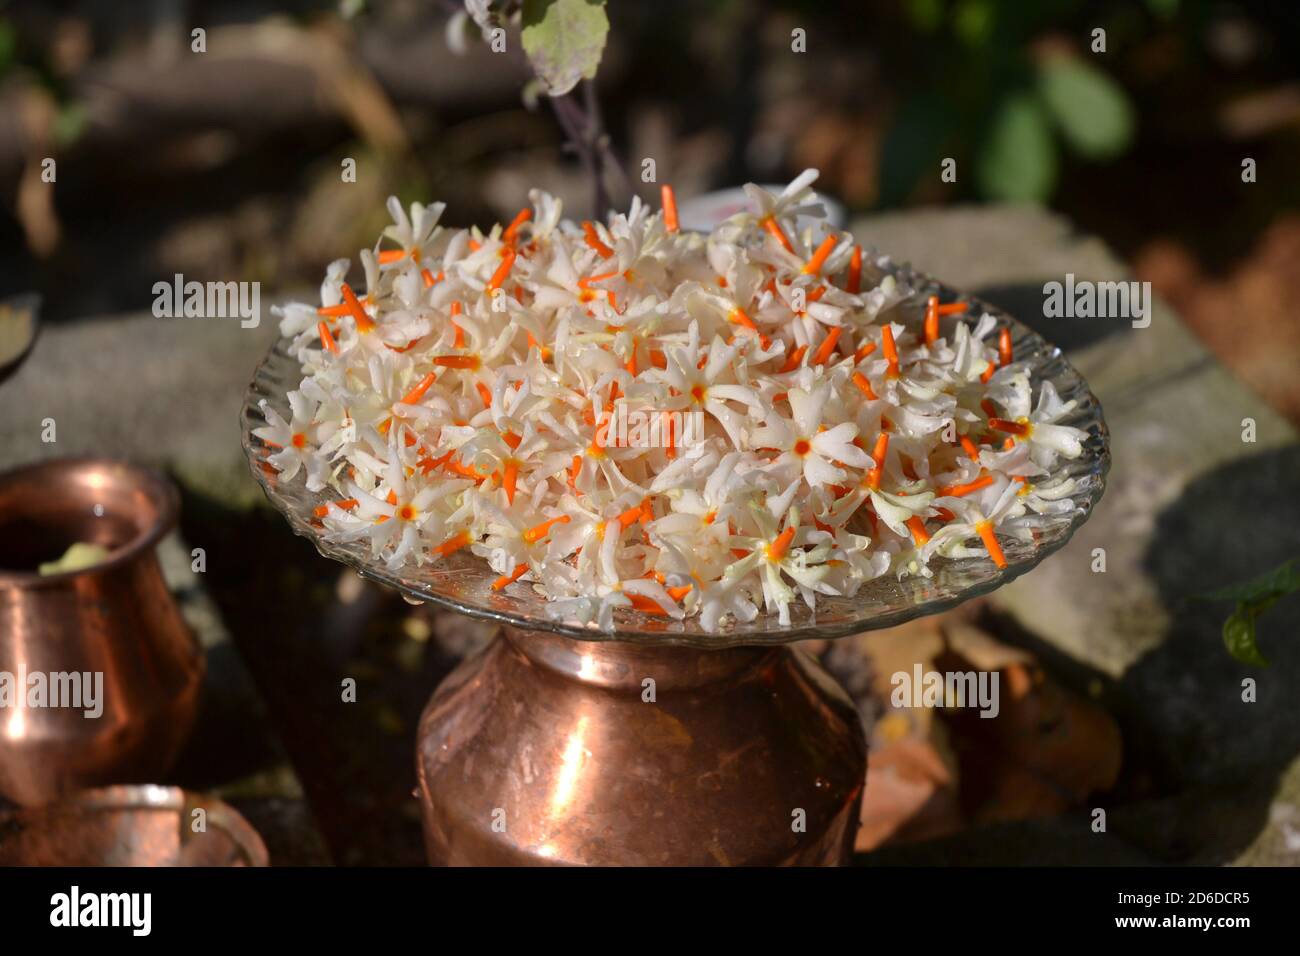 Fiori in piatto: Il jasmine fiorito di notte o Parijat o hengra bubar o Shiuli è una specie di Nyctanthes nativo del Sud Asia e del Sud-Est asiatico. Foto Stock